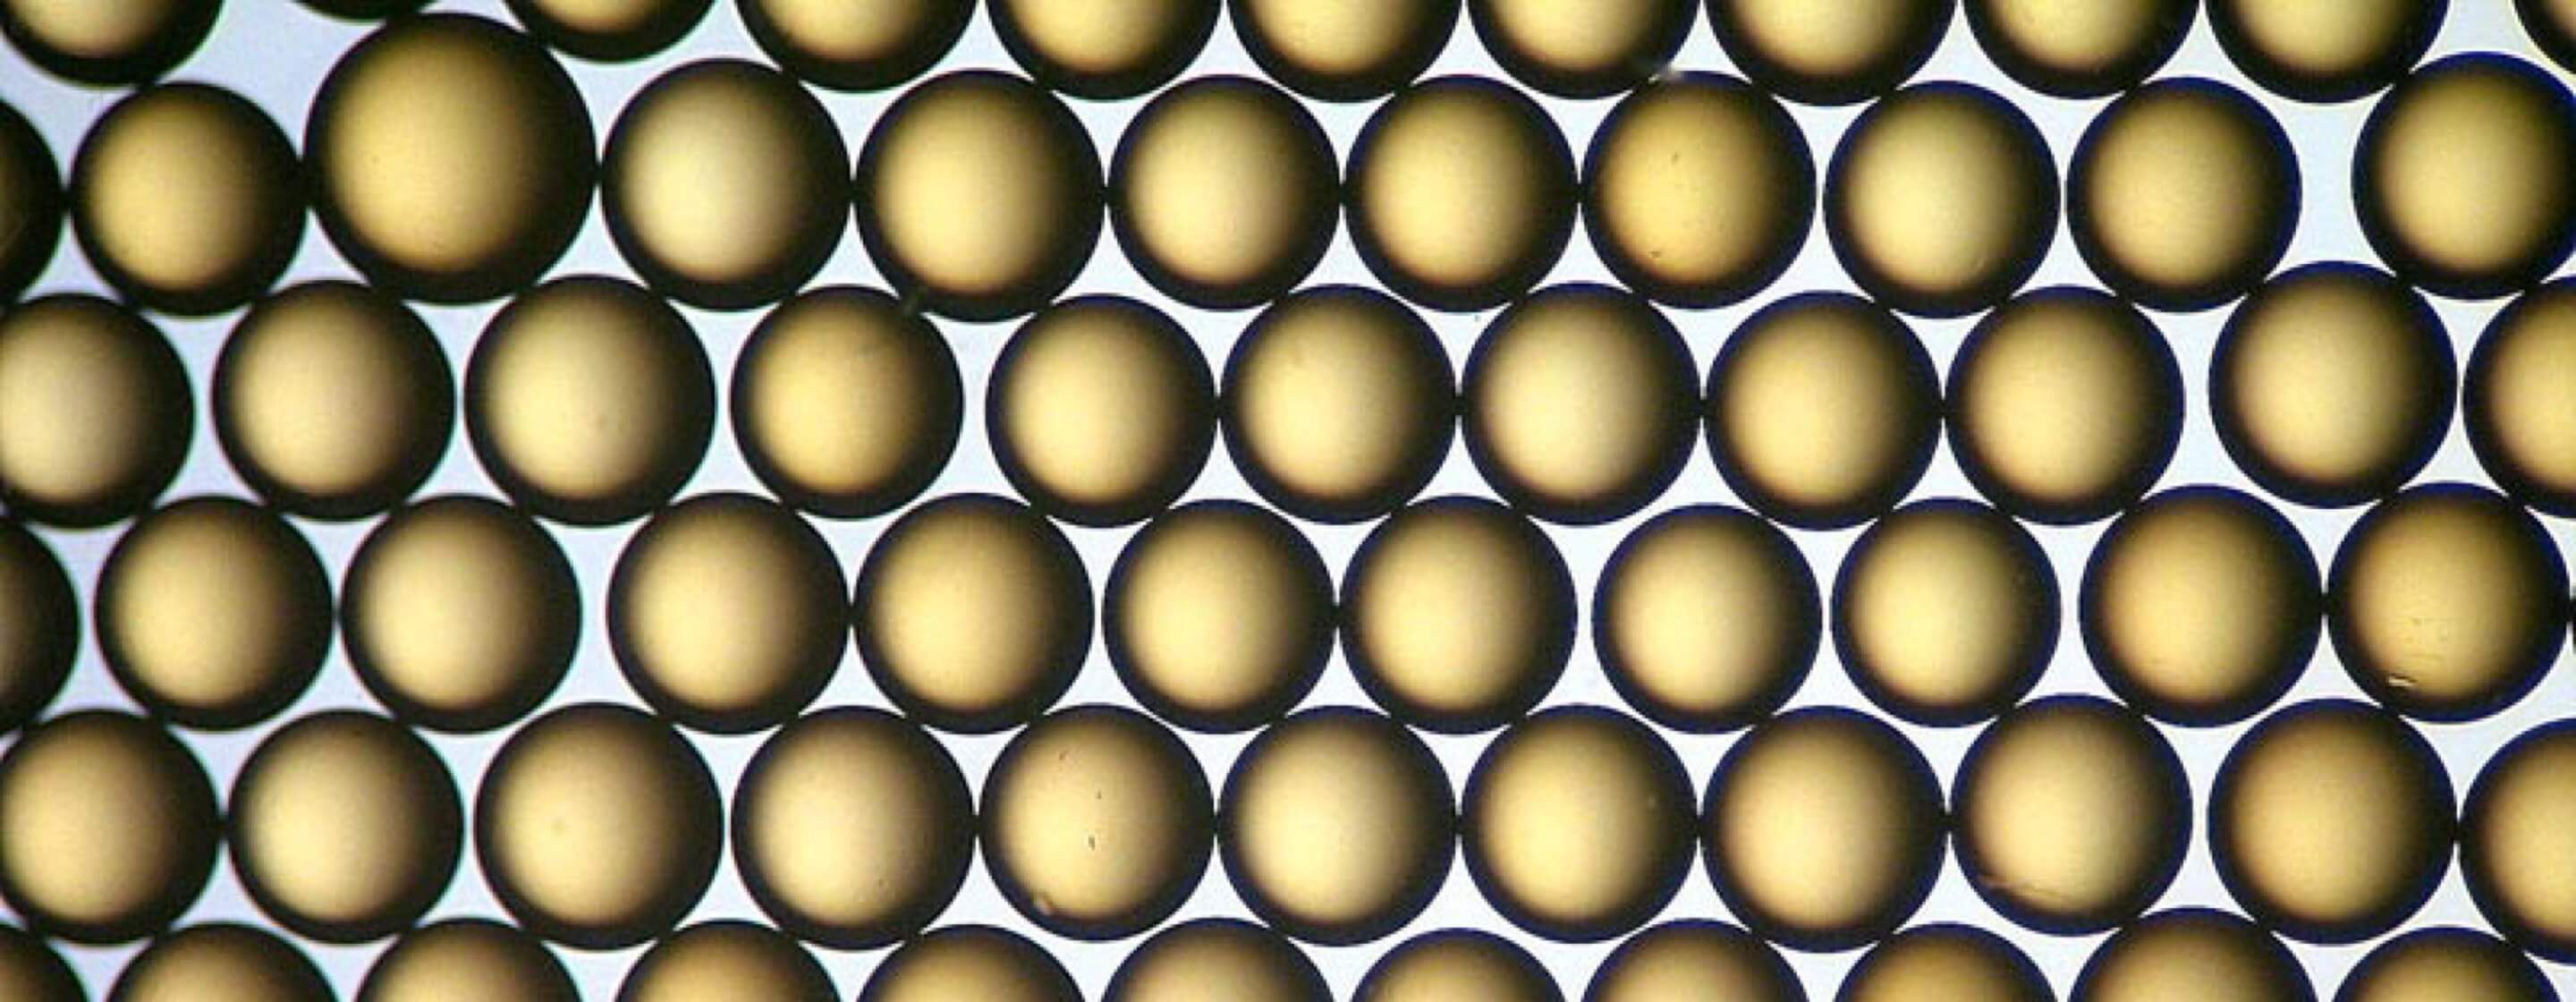  形似圆珠的琥珀色球形离子交换树脂的显微图像。